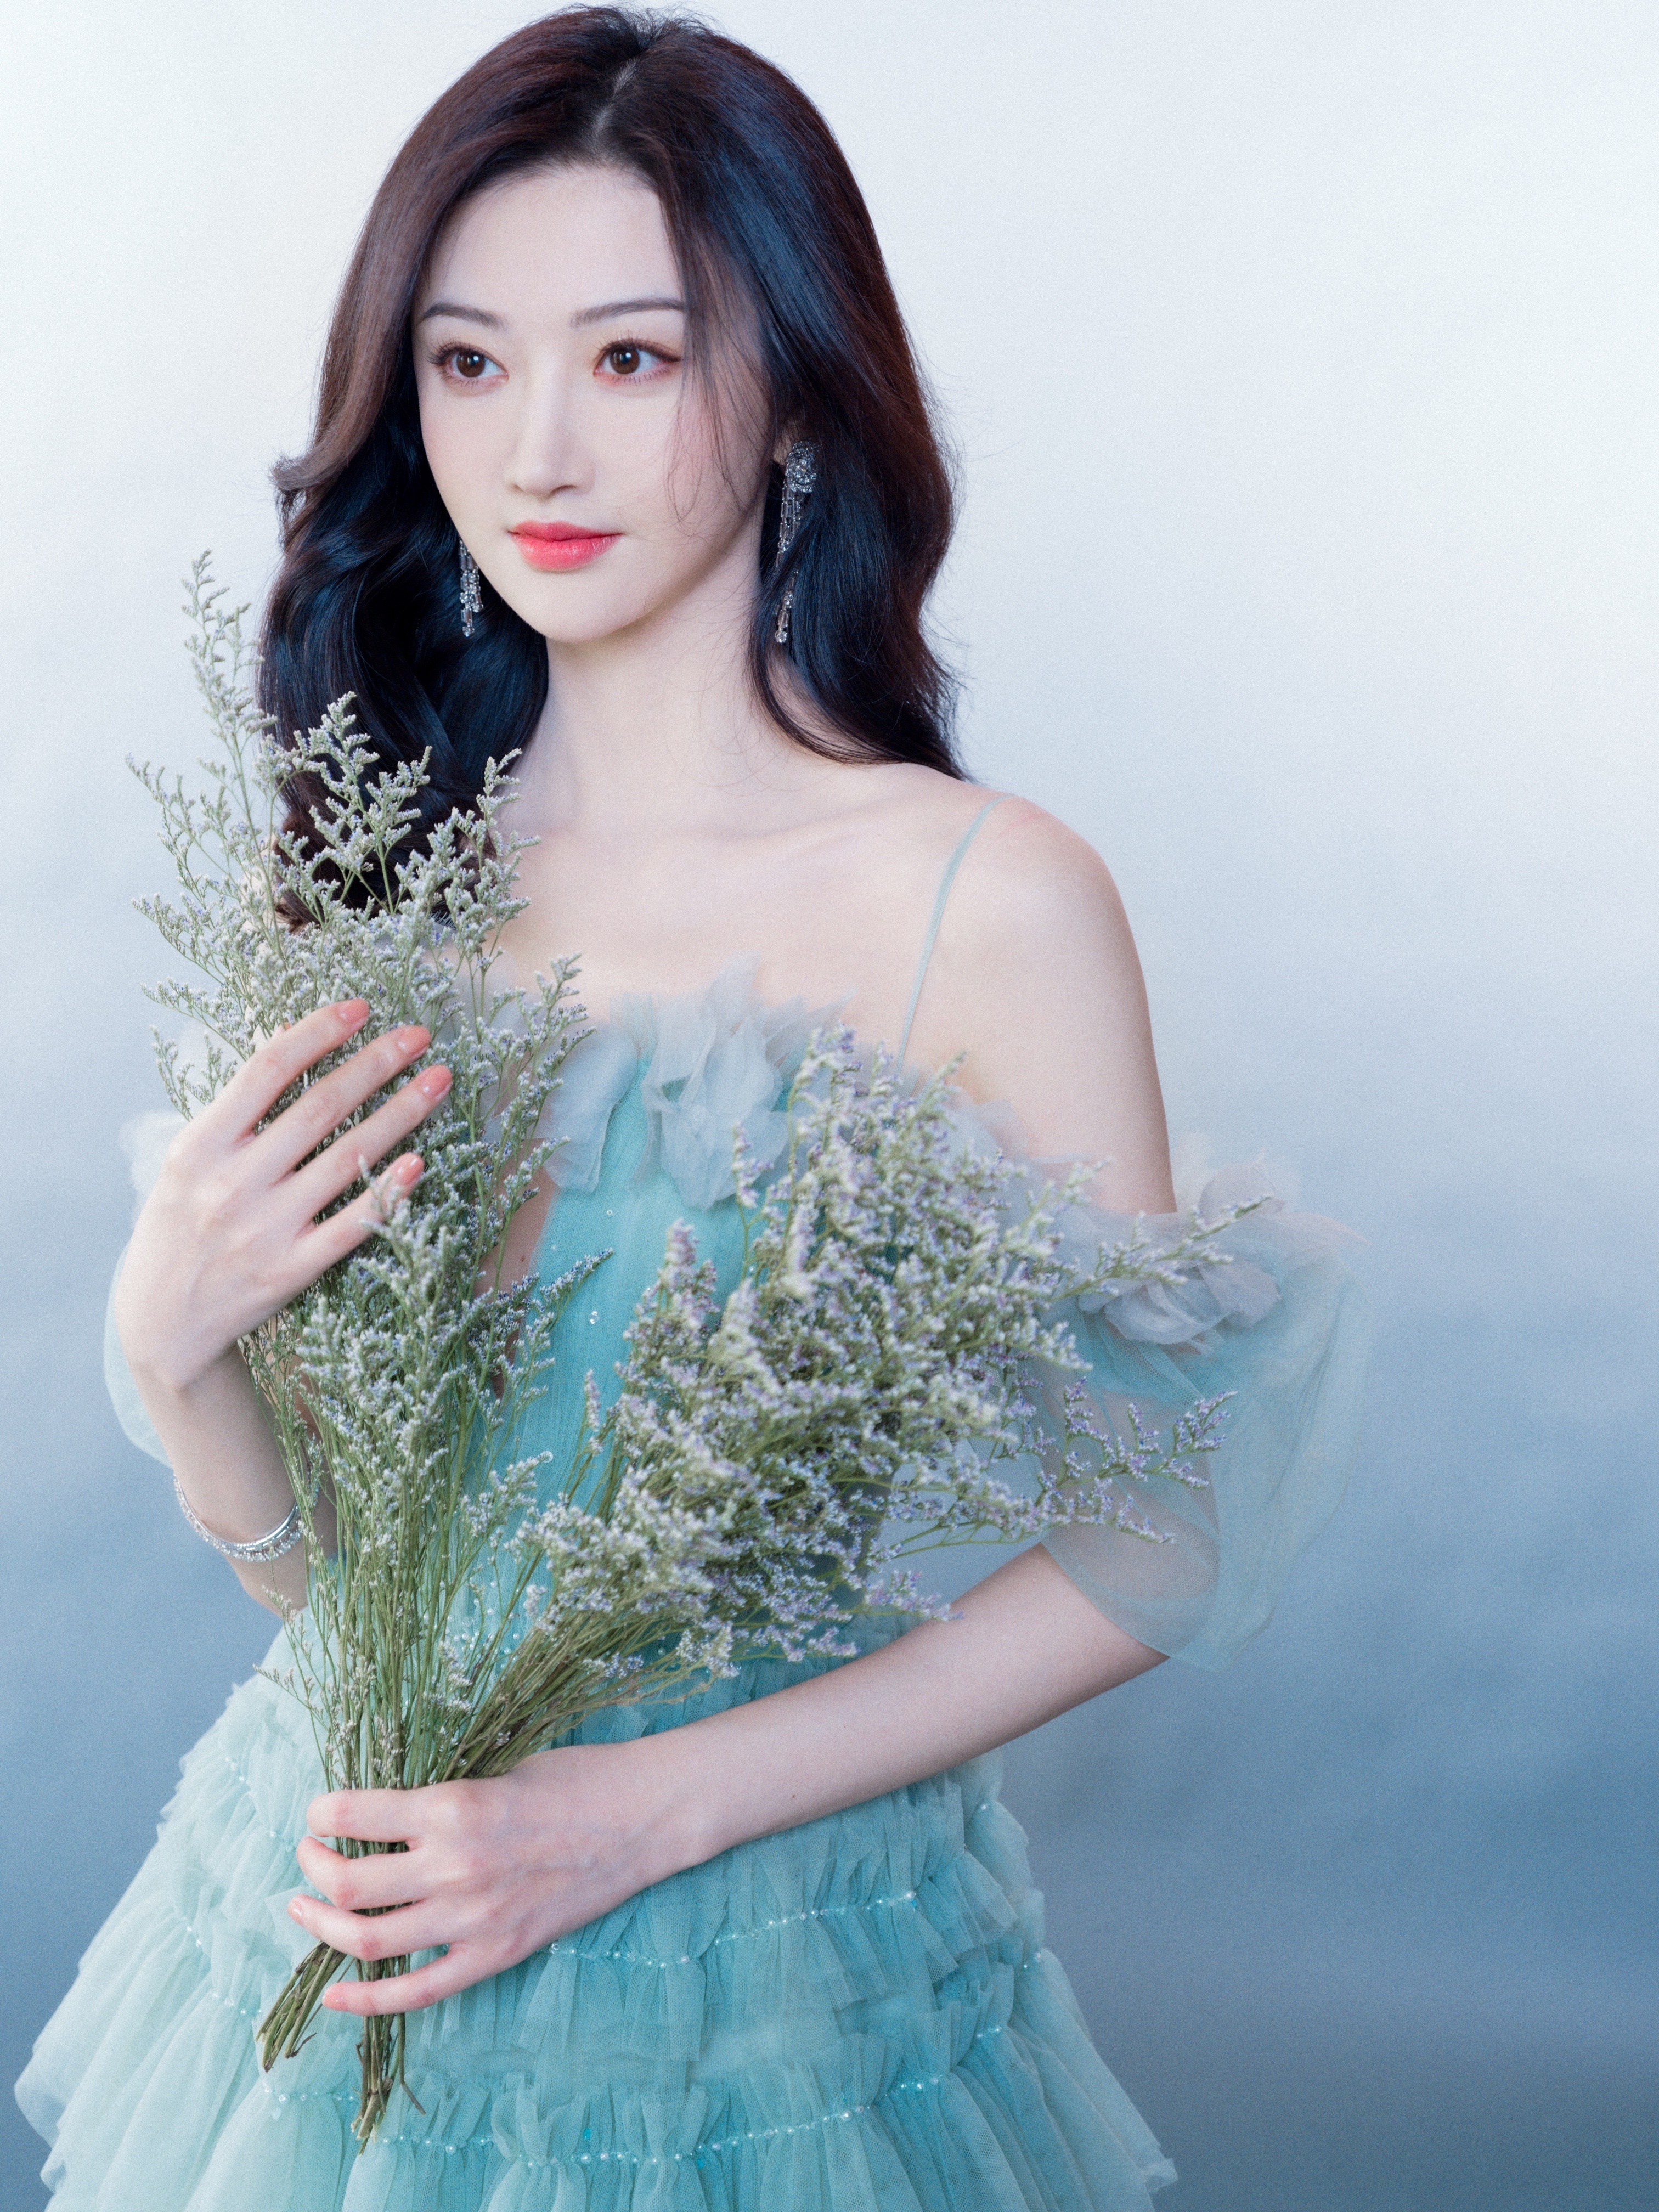 Women Celebrity Tian Jing Asian Actress 3024x4032